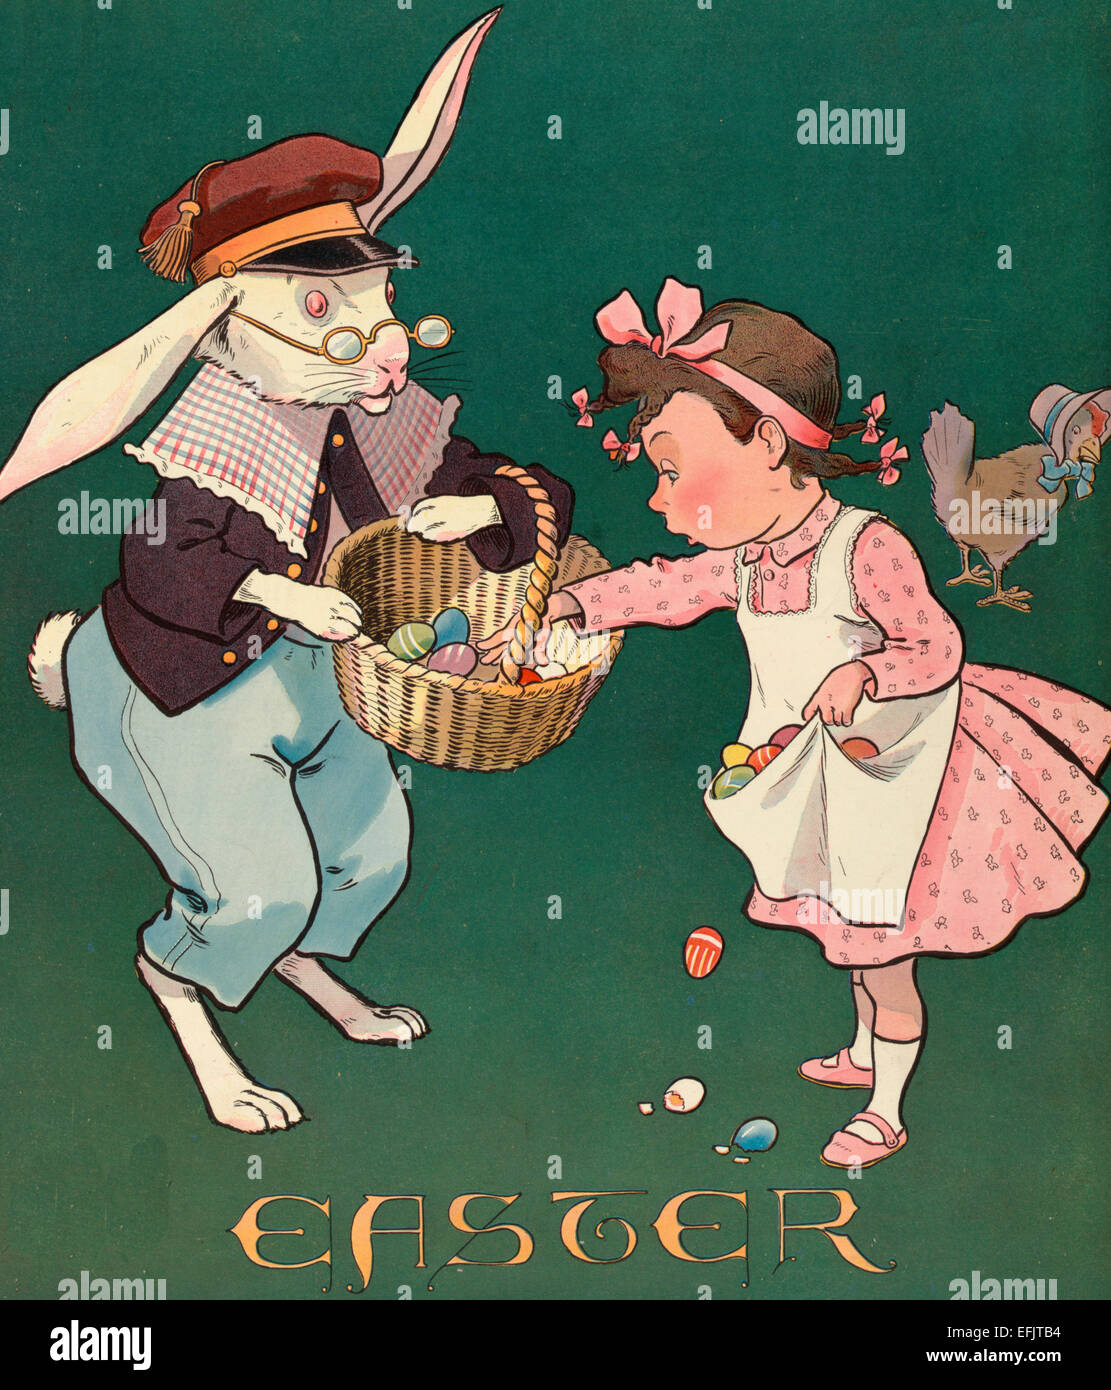 Vintage illustrazione mostra una bambina tenendo tutte le uova colorate da il coniglietto di Pasqua il cesto; ella è di metterli nel suo grembiule, ma alcuni sono caduti a terra e sono rotte. Vi è una gallina indossando un cofano in background, circa 1903 Foto Stock